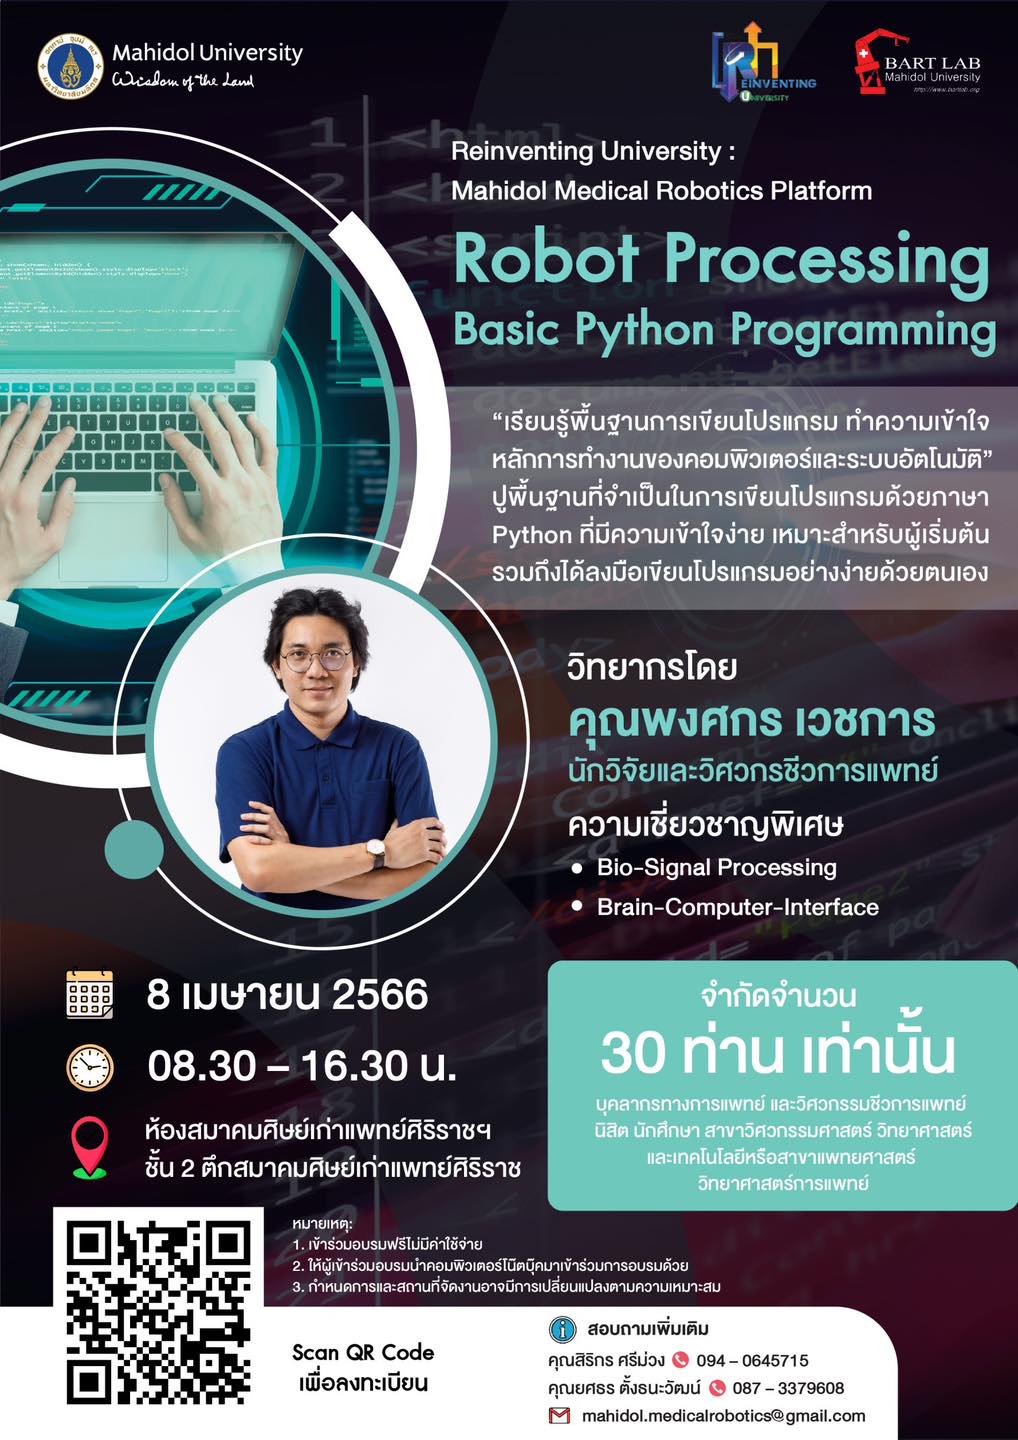 วิศวะมหิดล เชิญร่วมเวิร์กชอปฟรี การประมวลผลของหุ่นยนต์ - เขียนโปรแกรม Python ขั้นพื้นฐาน (Robot Processing - Basic Python Programming) สมัครวันนี้ - 5 เม.ย.